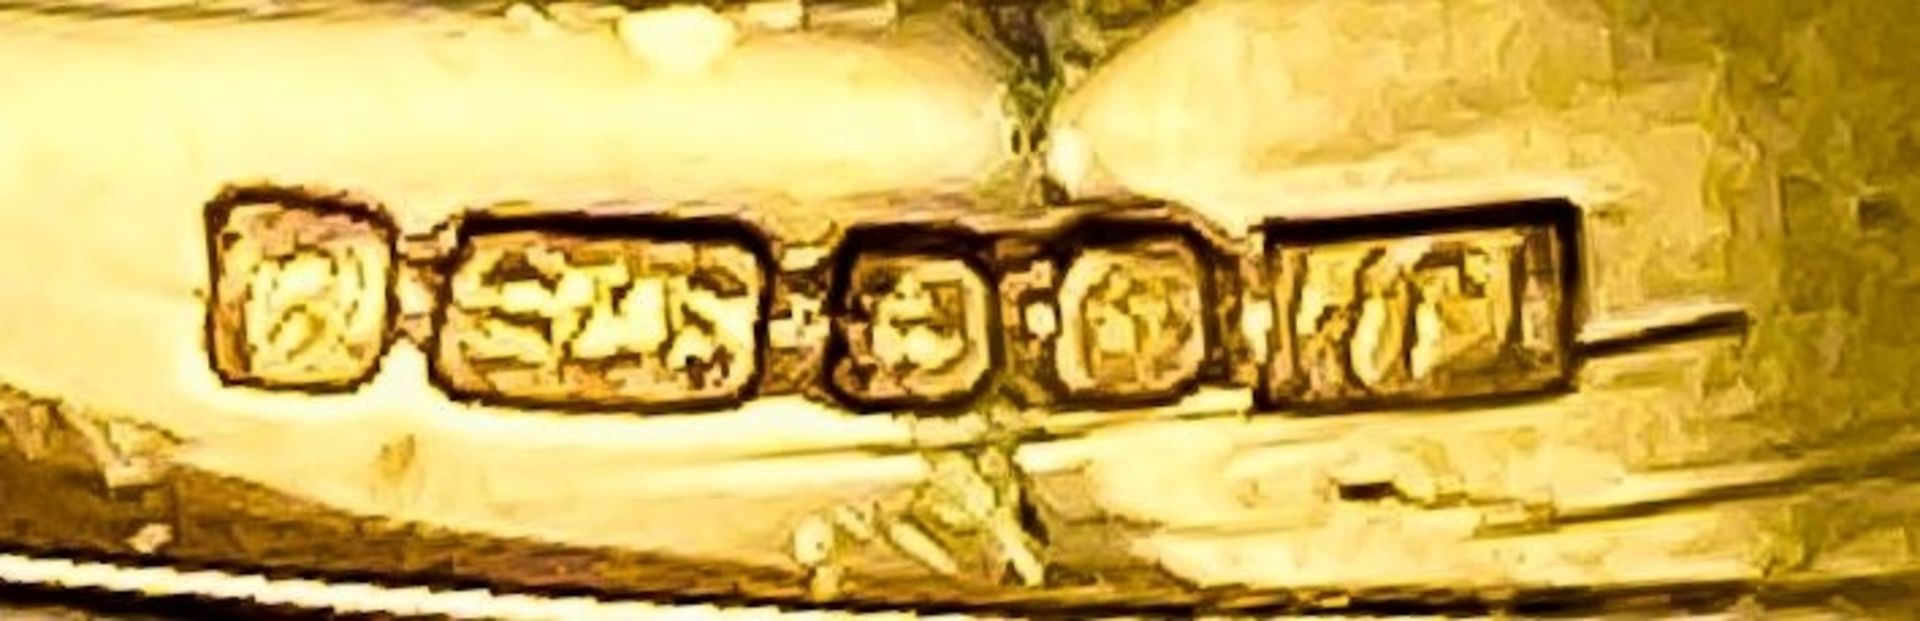 A 9K YELLOW GOLD, DIAMOND SET, MASONIC SYMBOL RING. 2.5G. SIZE R. - Image 5 of 5